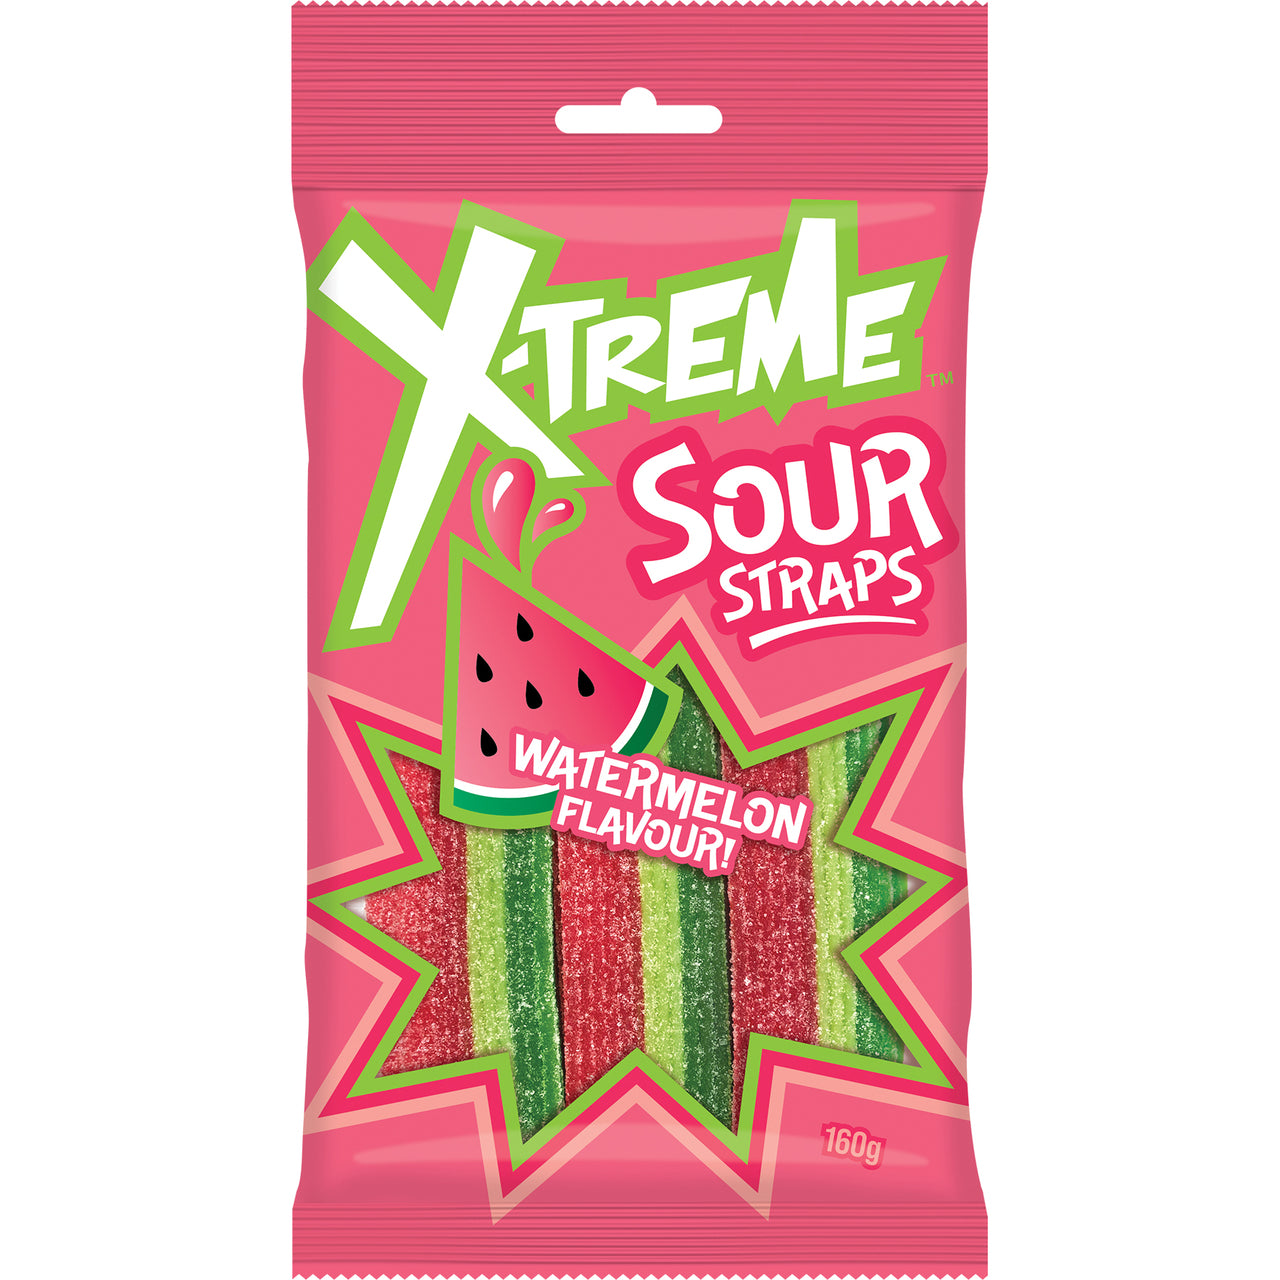 Xtreme Sour Strap Watermelon - 160g